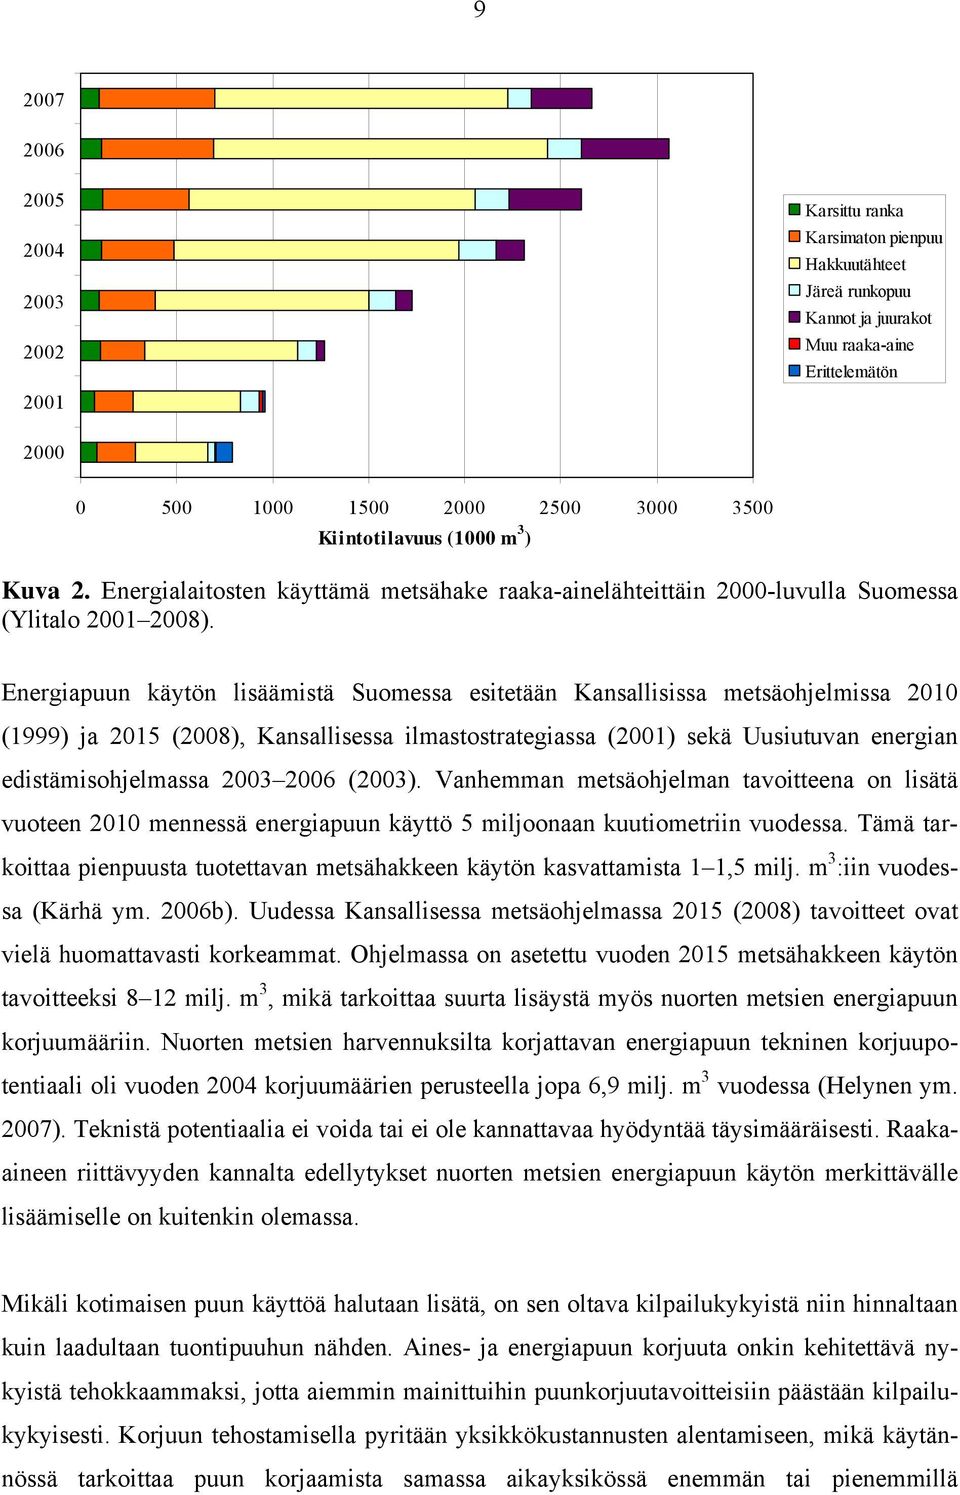 Energiapuun käytön lisäämistä Suomessa esitetään Kansallisissa metsäohjelmissa 2010 (1999) ja 2015 (2008), Kansallisessa ilmastostrategiassa (2001) sekä Uusiutuvan energian edistämisohjelmassa 2003